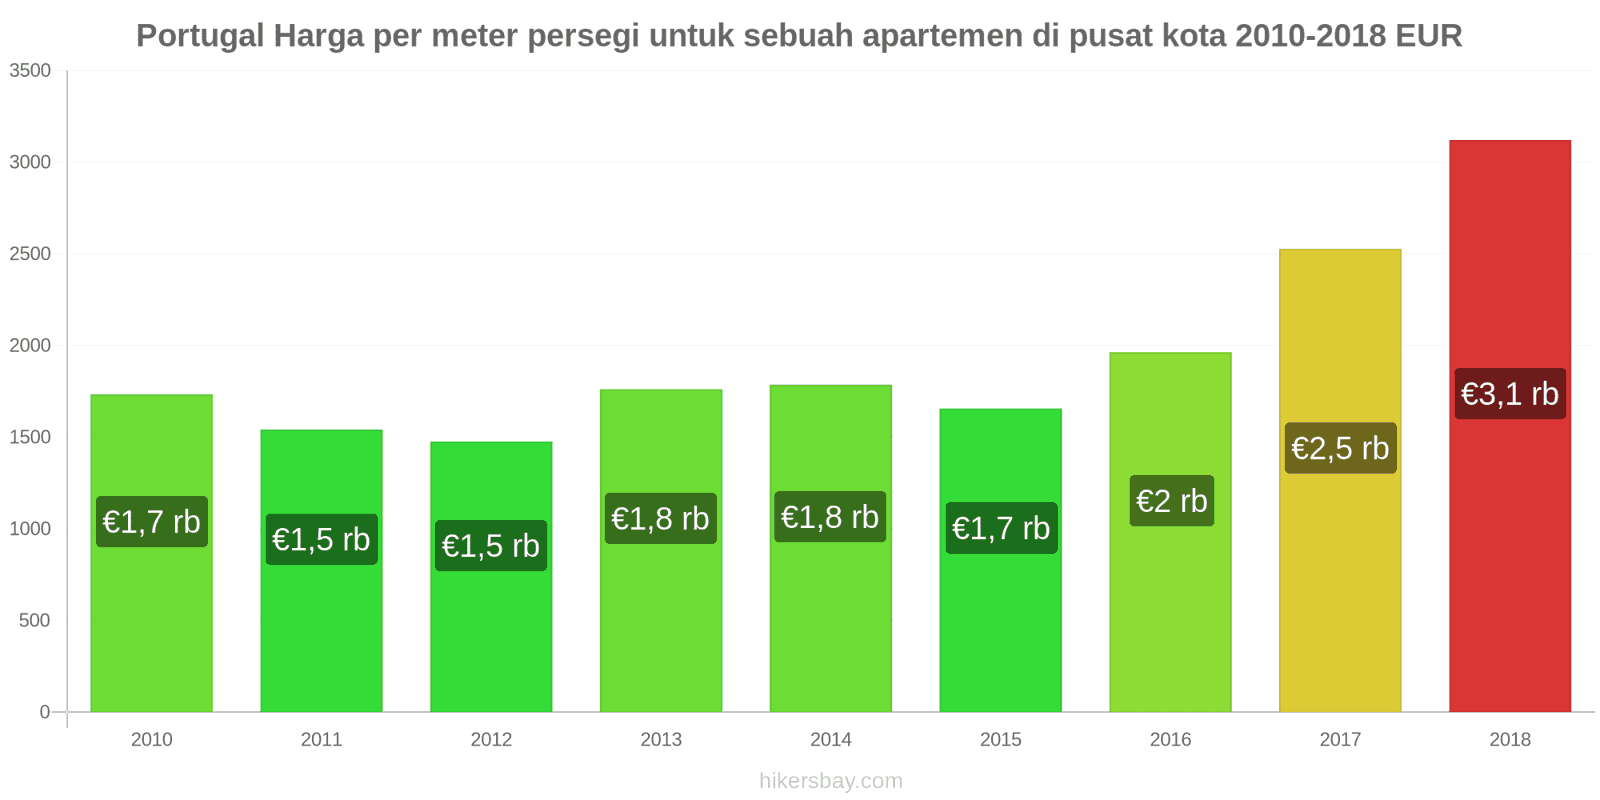 Portugal perubahan harga Harga per meter persegi untuk apartemen di pusat kota hikersbay.com